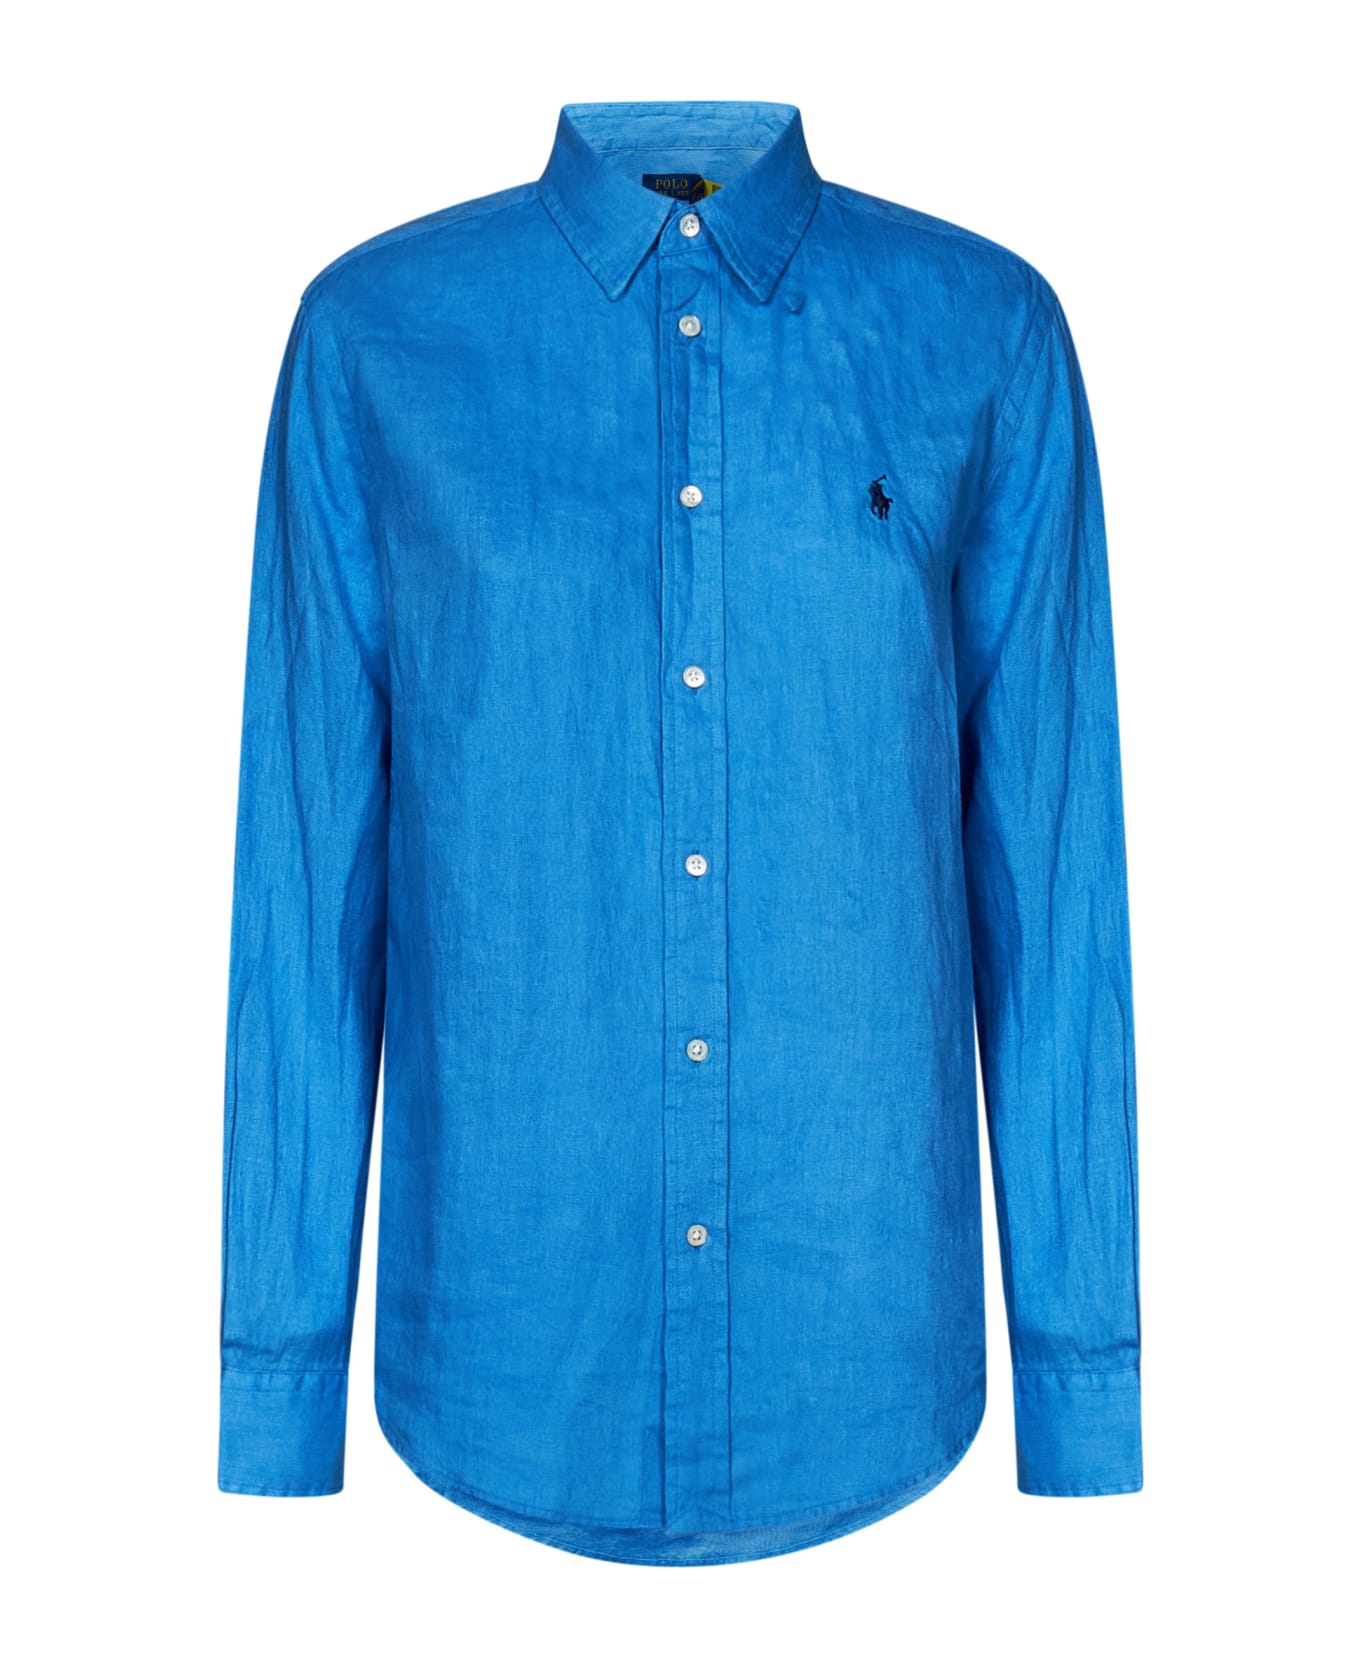 Polo Ralph Lauren Shirt - Clear Blue